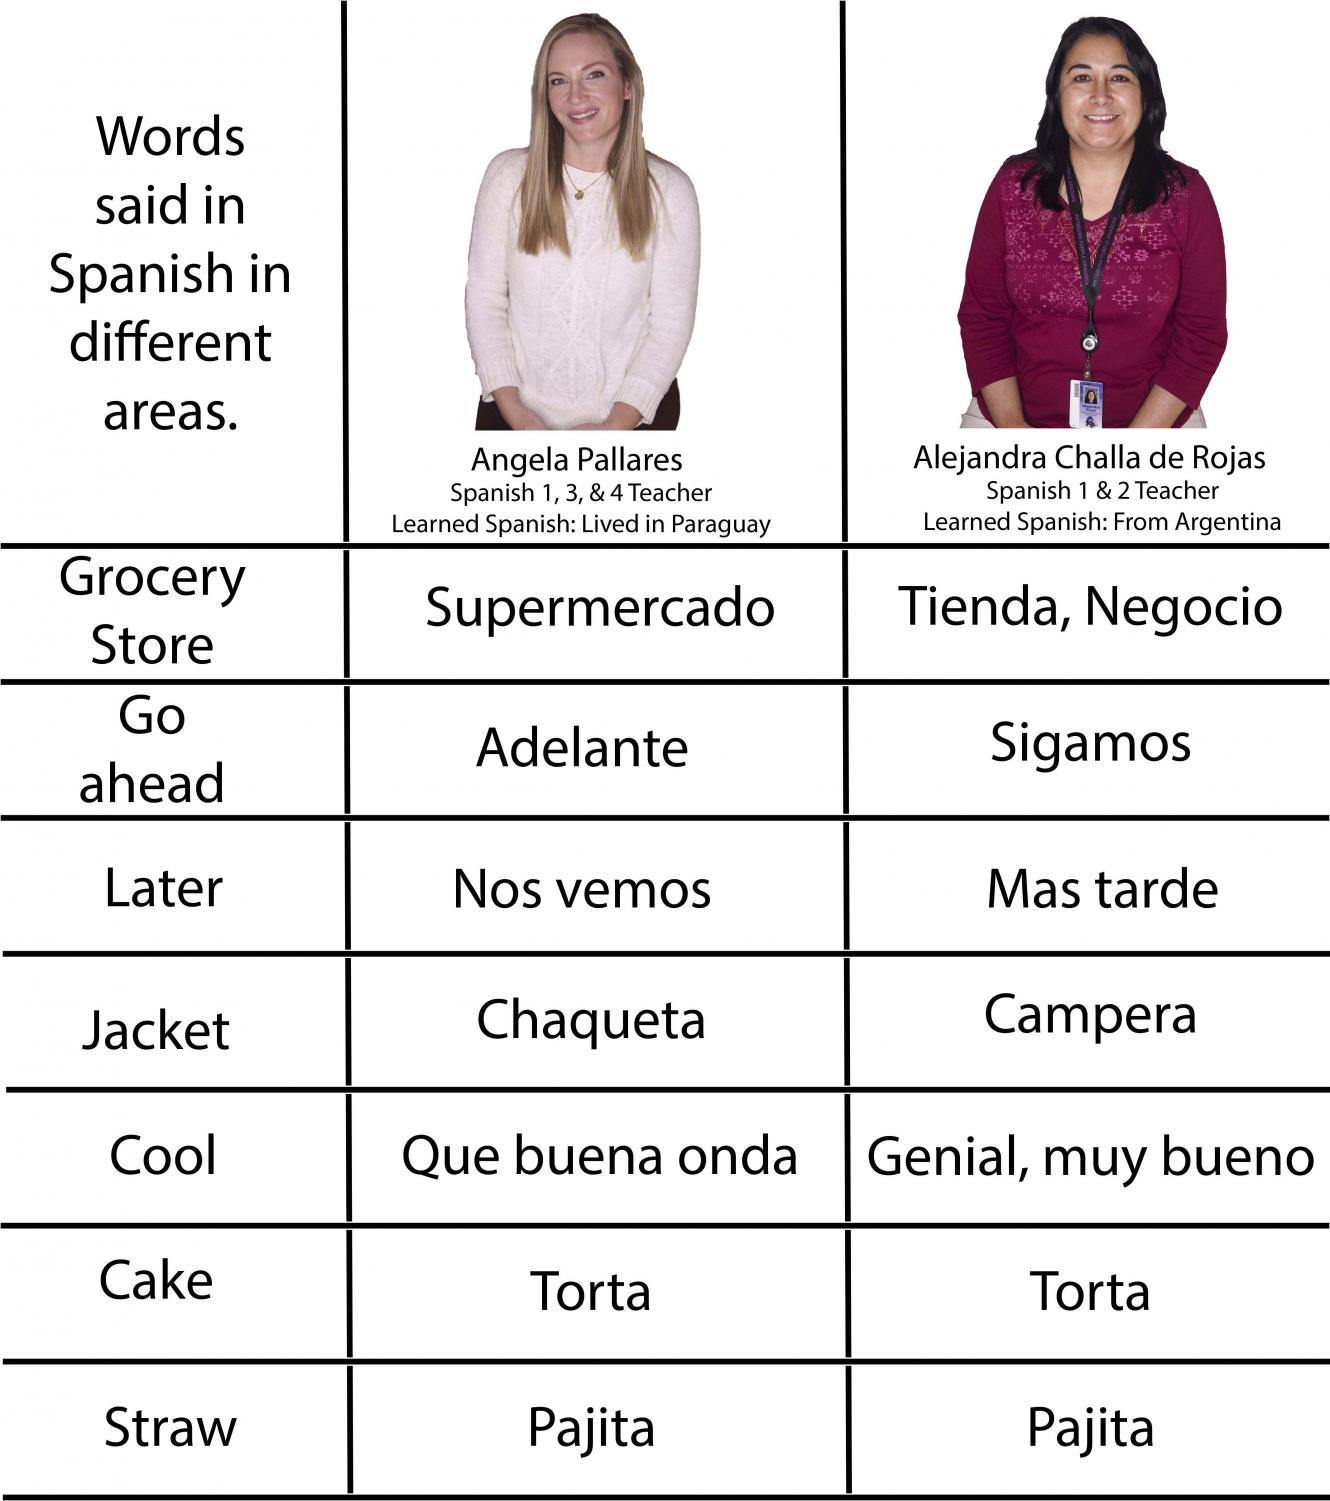 native-speakers-better-understanding-the-language-through-spanish-class-pitt-media